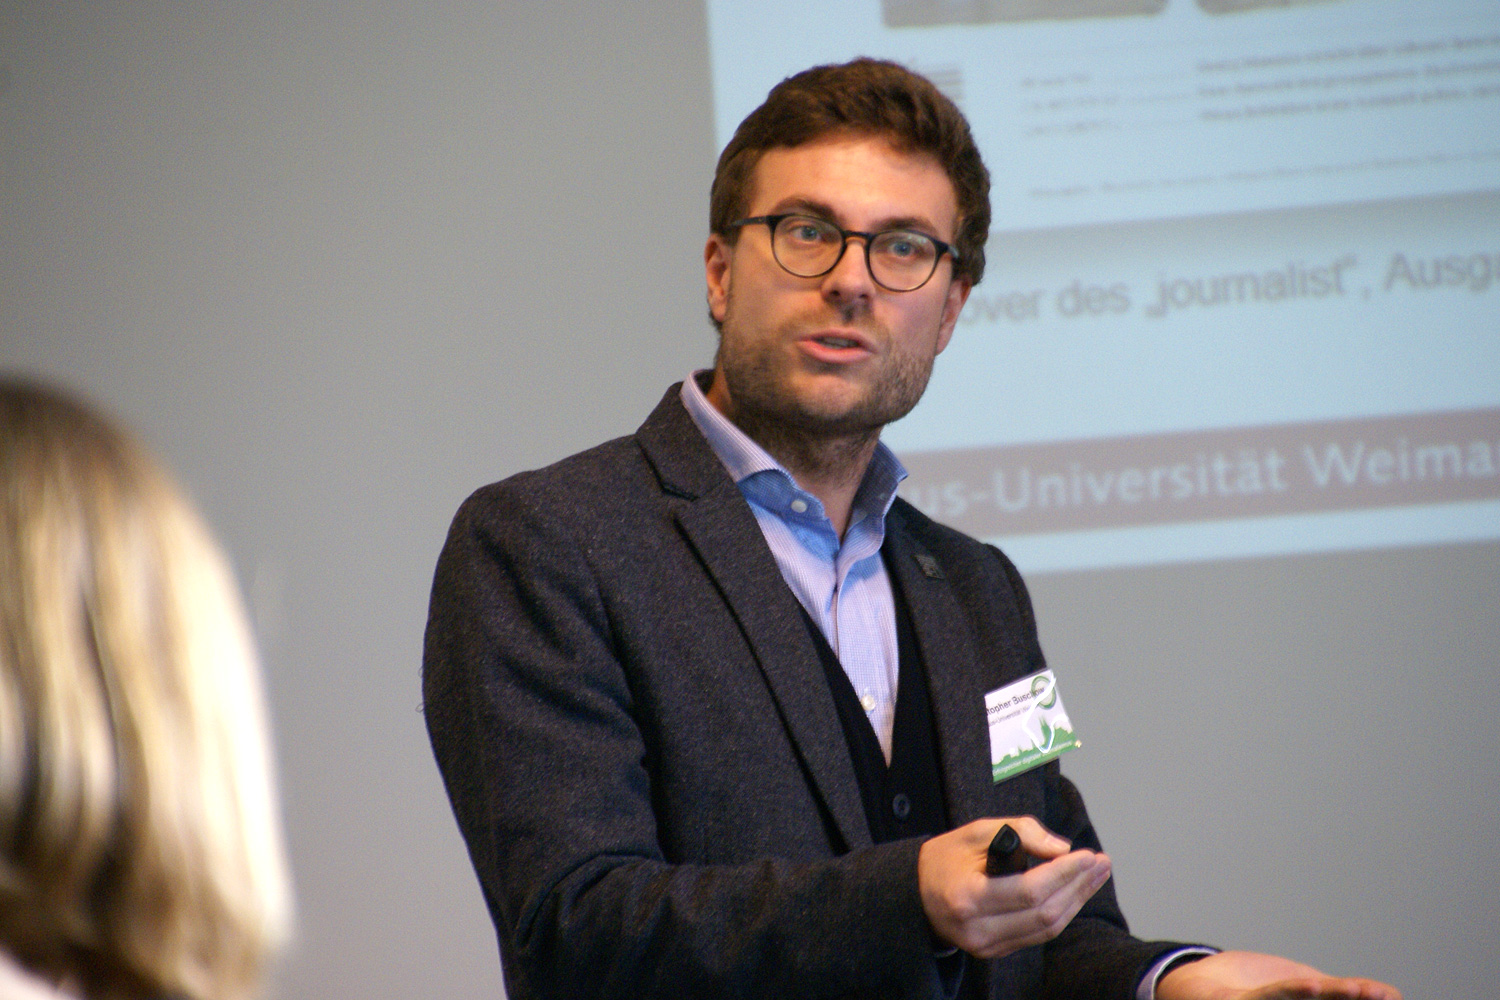 Christopher Buschow von der Bauhaus-Universität Weimar bei seinem Vortrag beim Symposium "Erfolgreicher digitaler Journalismus". Foto: Daniel Kunkel